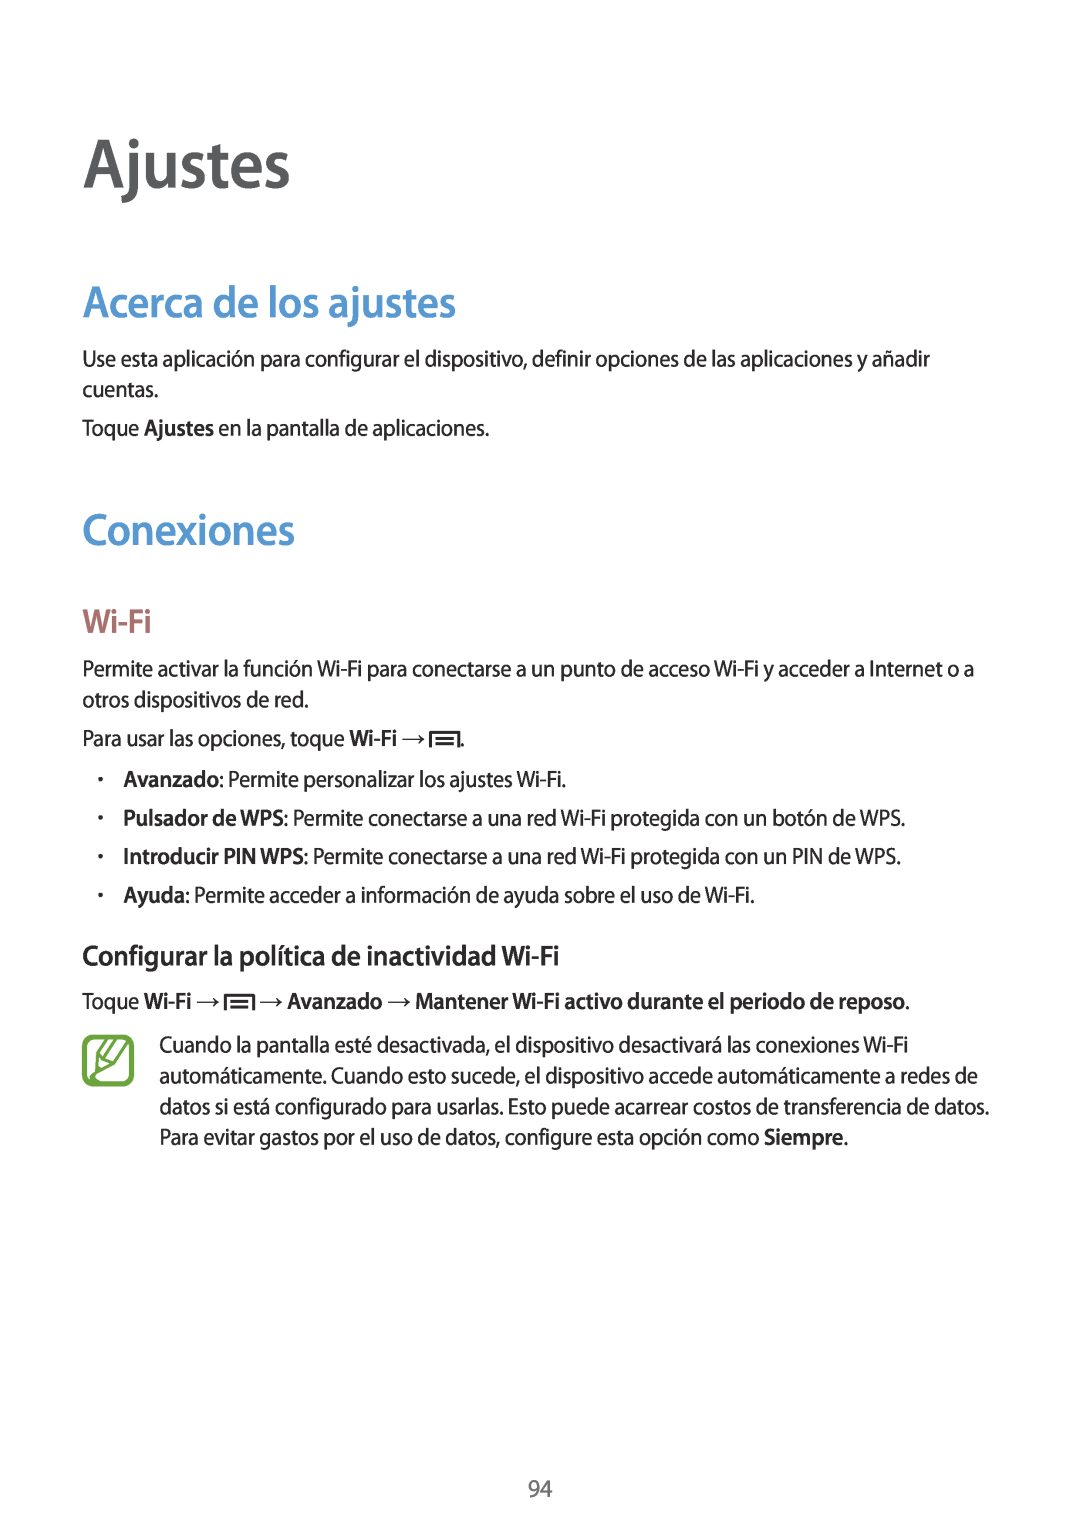 Samsung GT-S7275HKNXEF manual Ajustes, Acerca de los ajustes, Conexiones, Configurar la política de inactividad Wi-Fi 